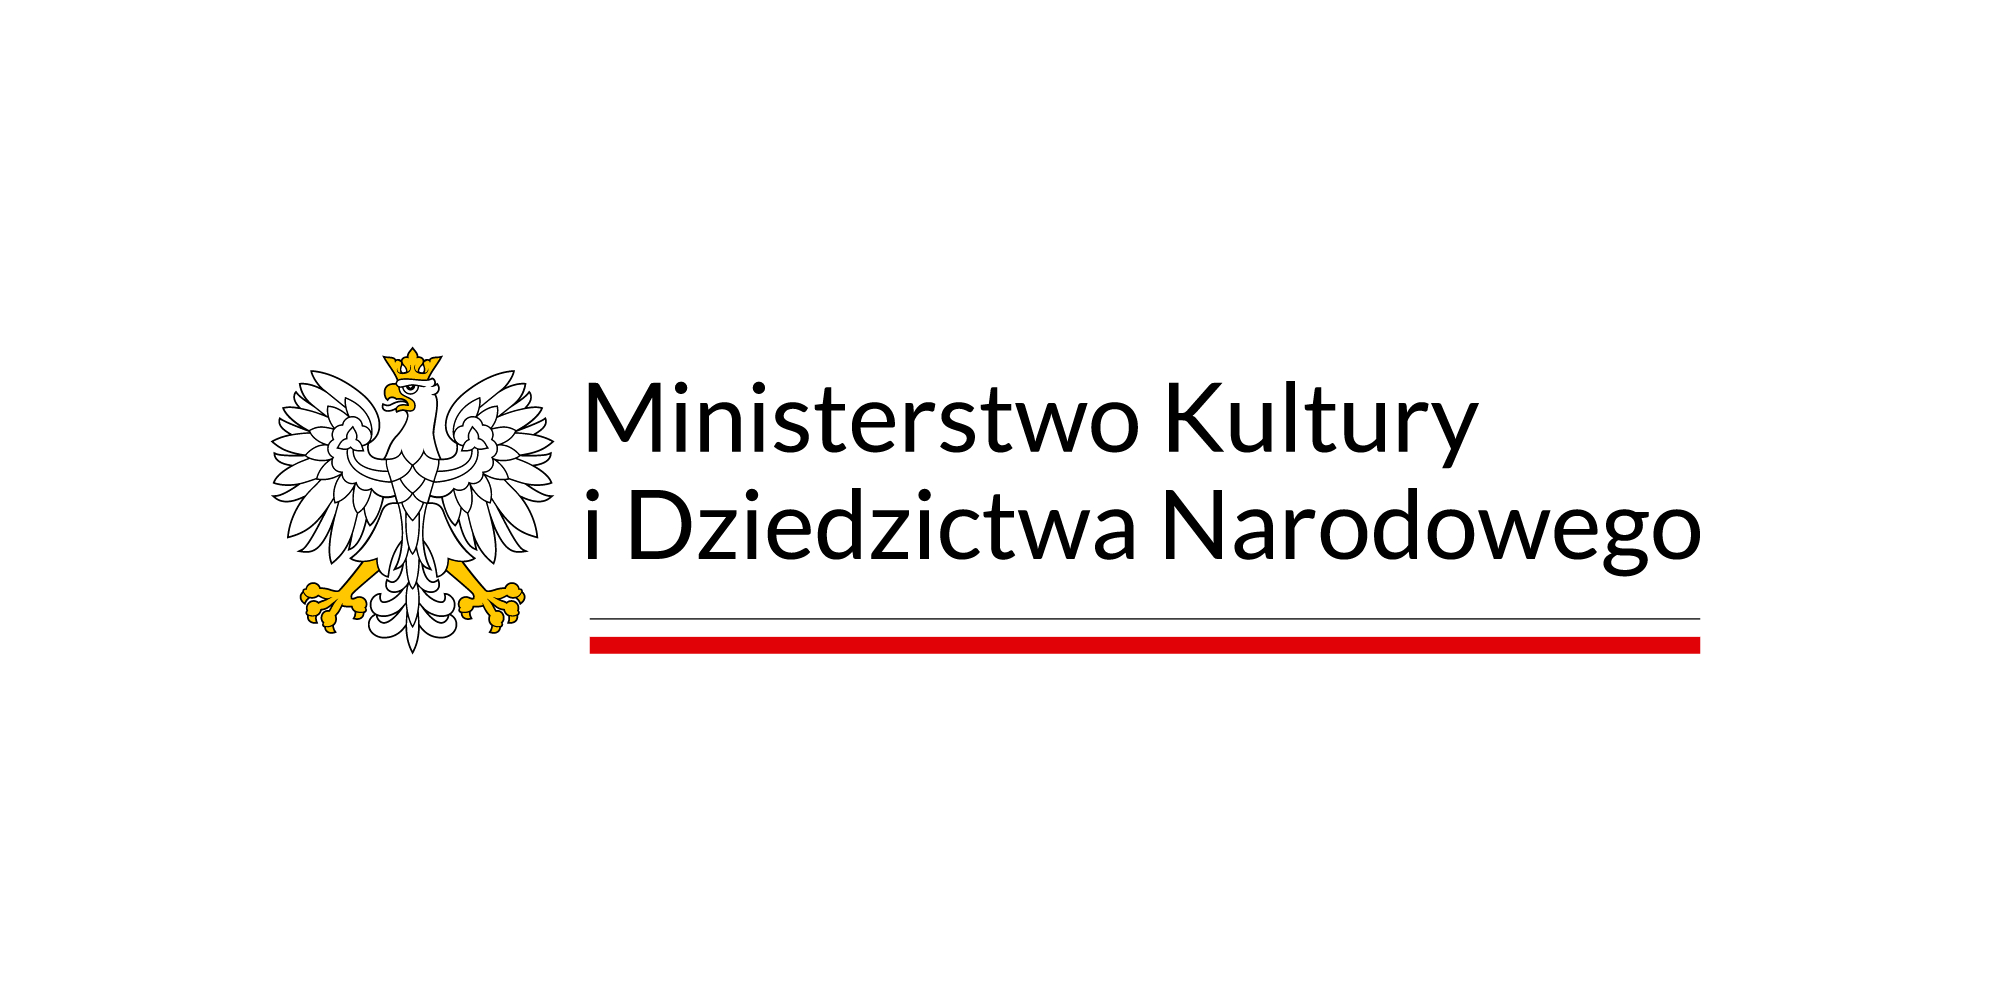 logo mkidn